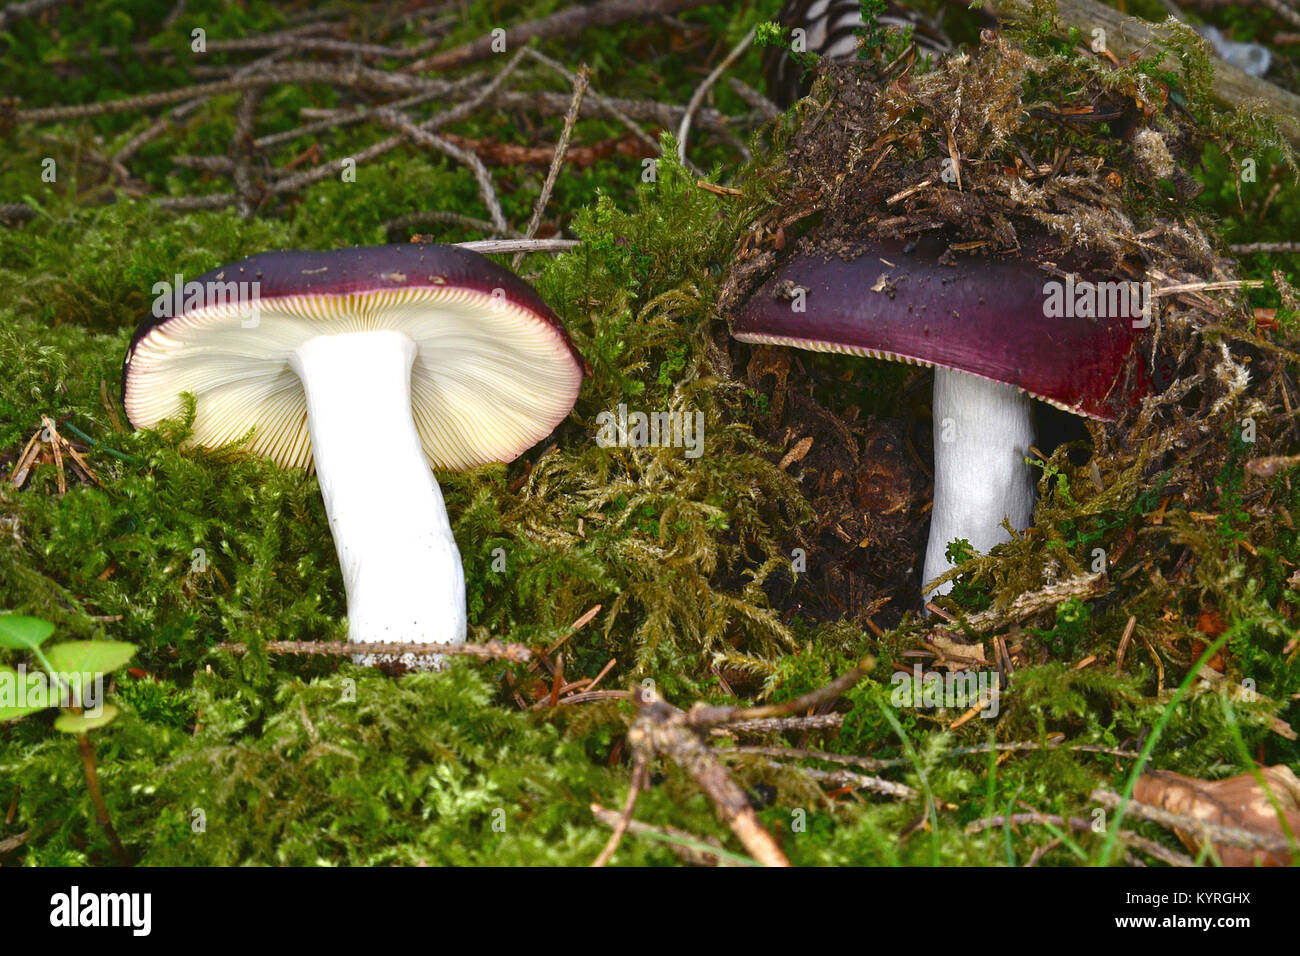 Violet pourpre noirâtre Russula, brittlegrille (Russula atropurpurea), organe de fructification sur beechforest Banque D'Images